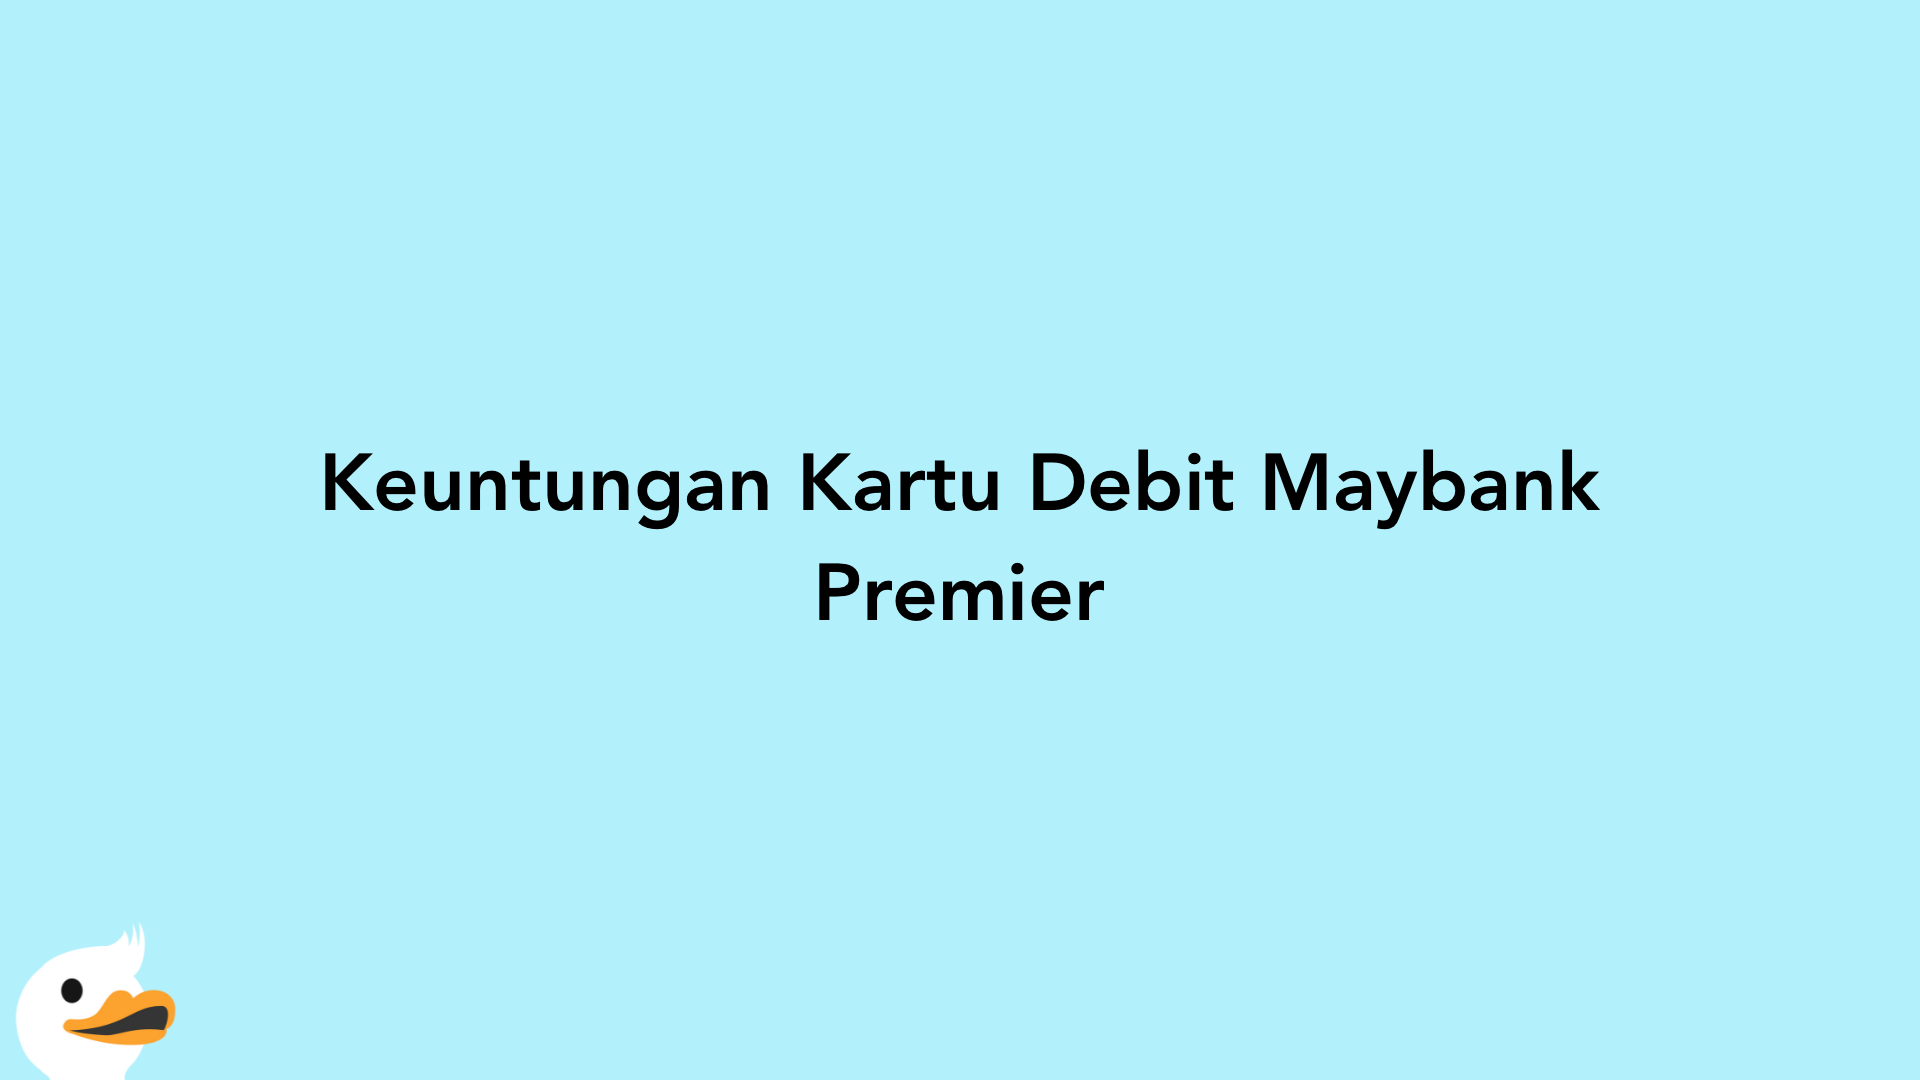 Keuntungan Kartu Debit Maybank Premier